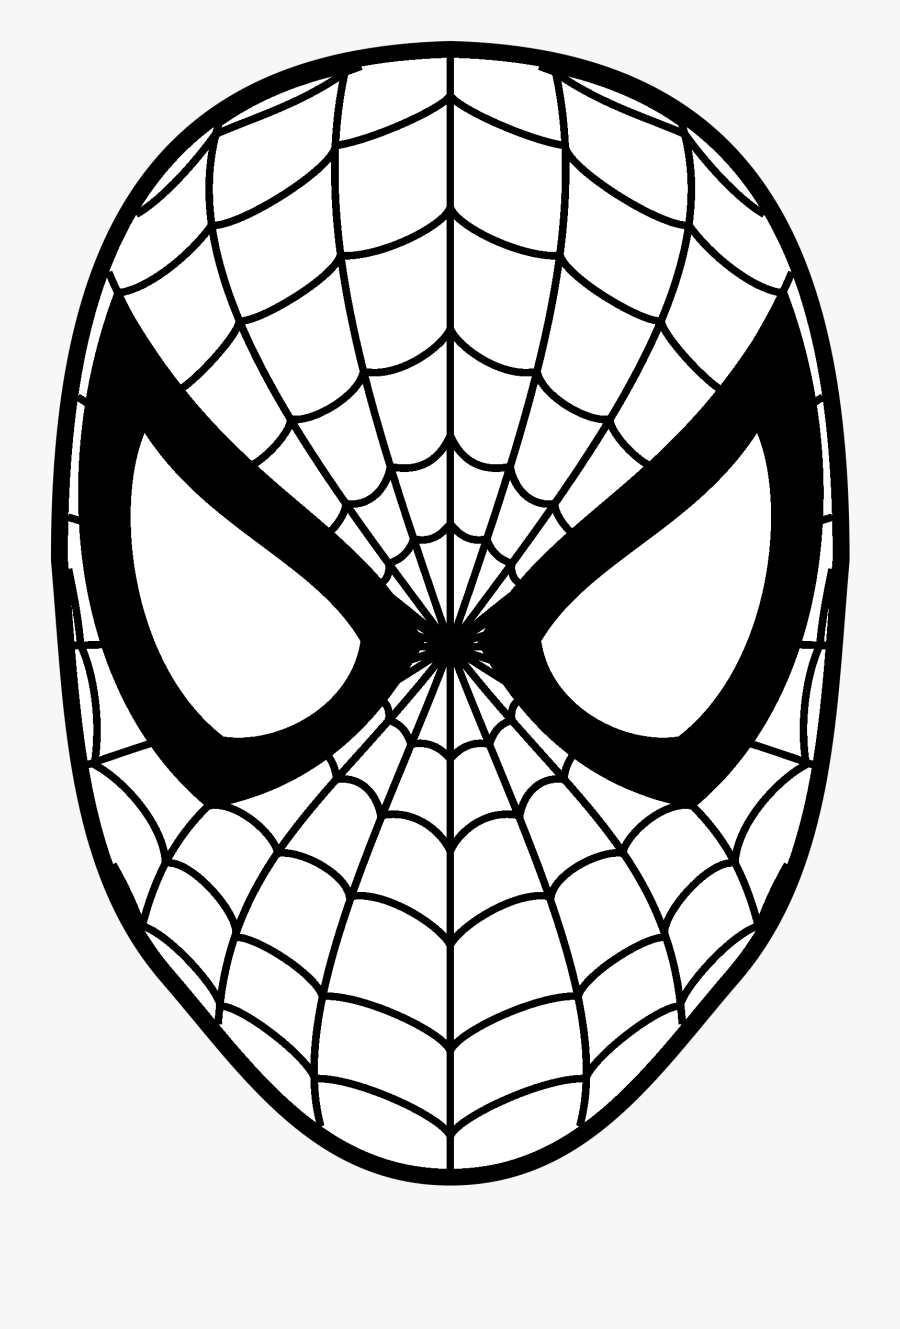 Download Spider Man Logo Png Transparent & Svg Vector - Spiderman ...